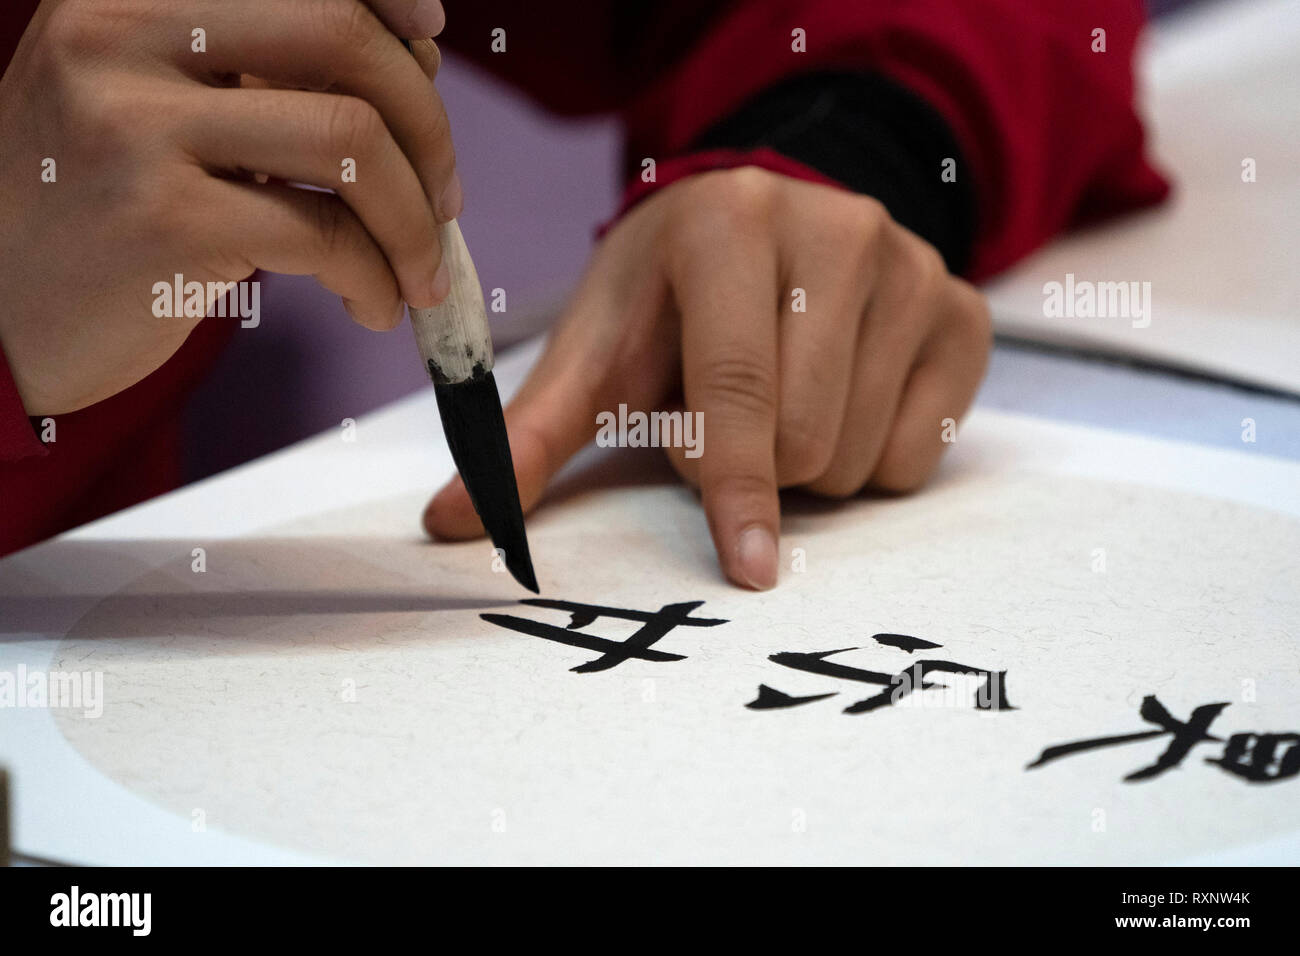 Idéogrammes japonais femme écrit avec pinceau close up detail Banque D'Images